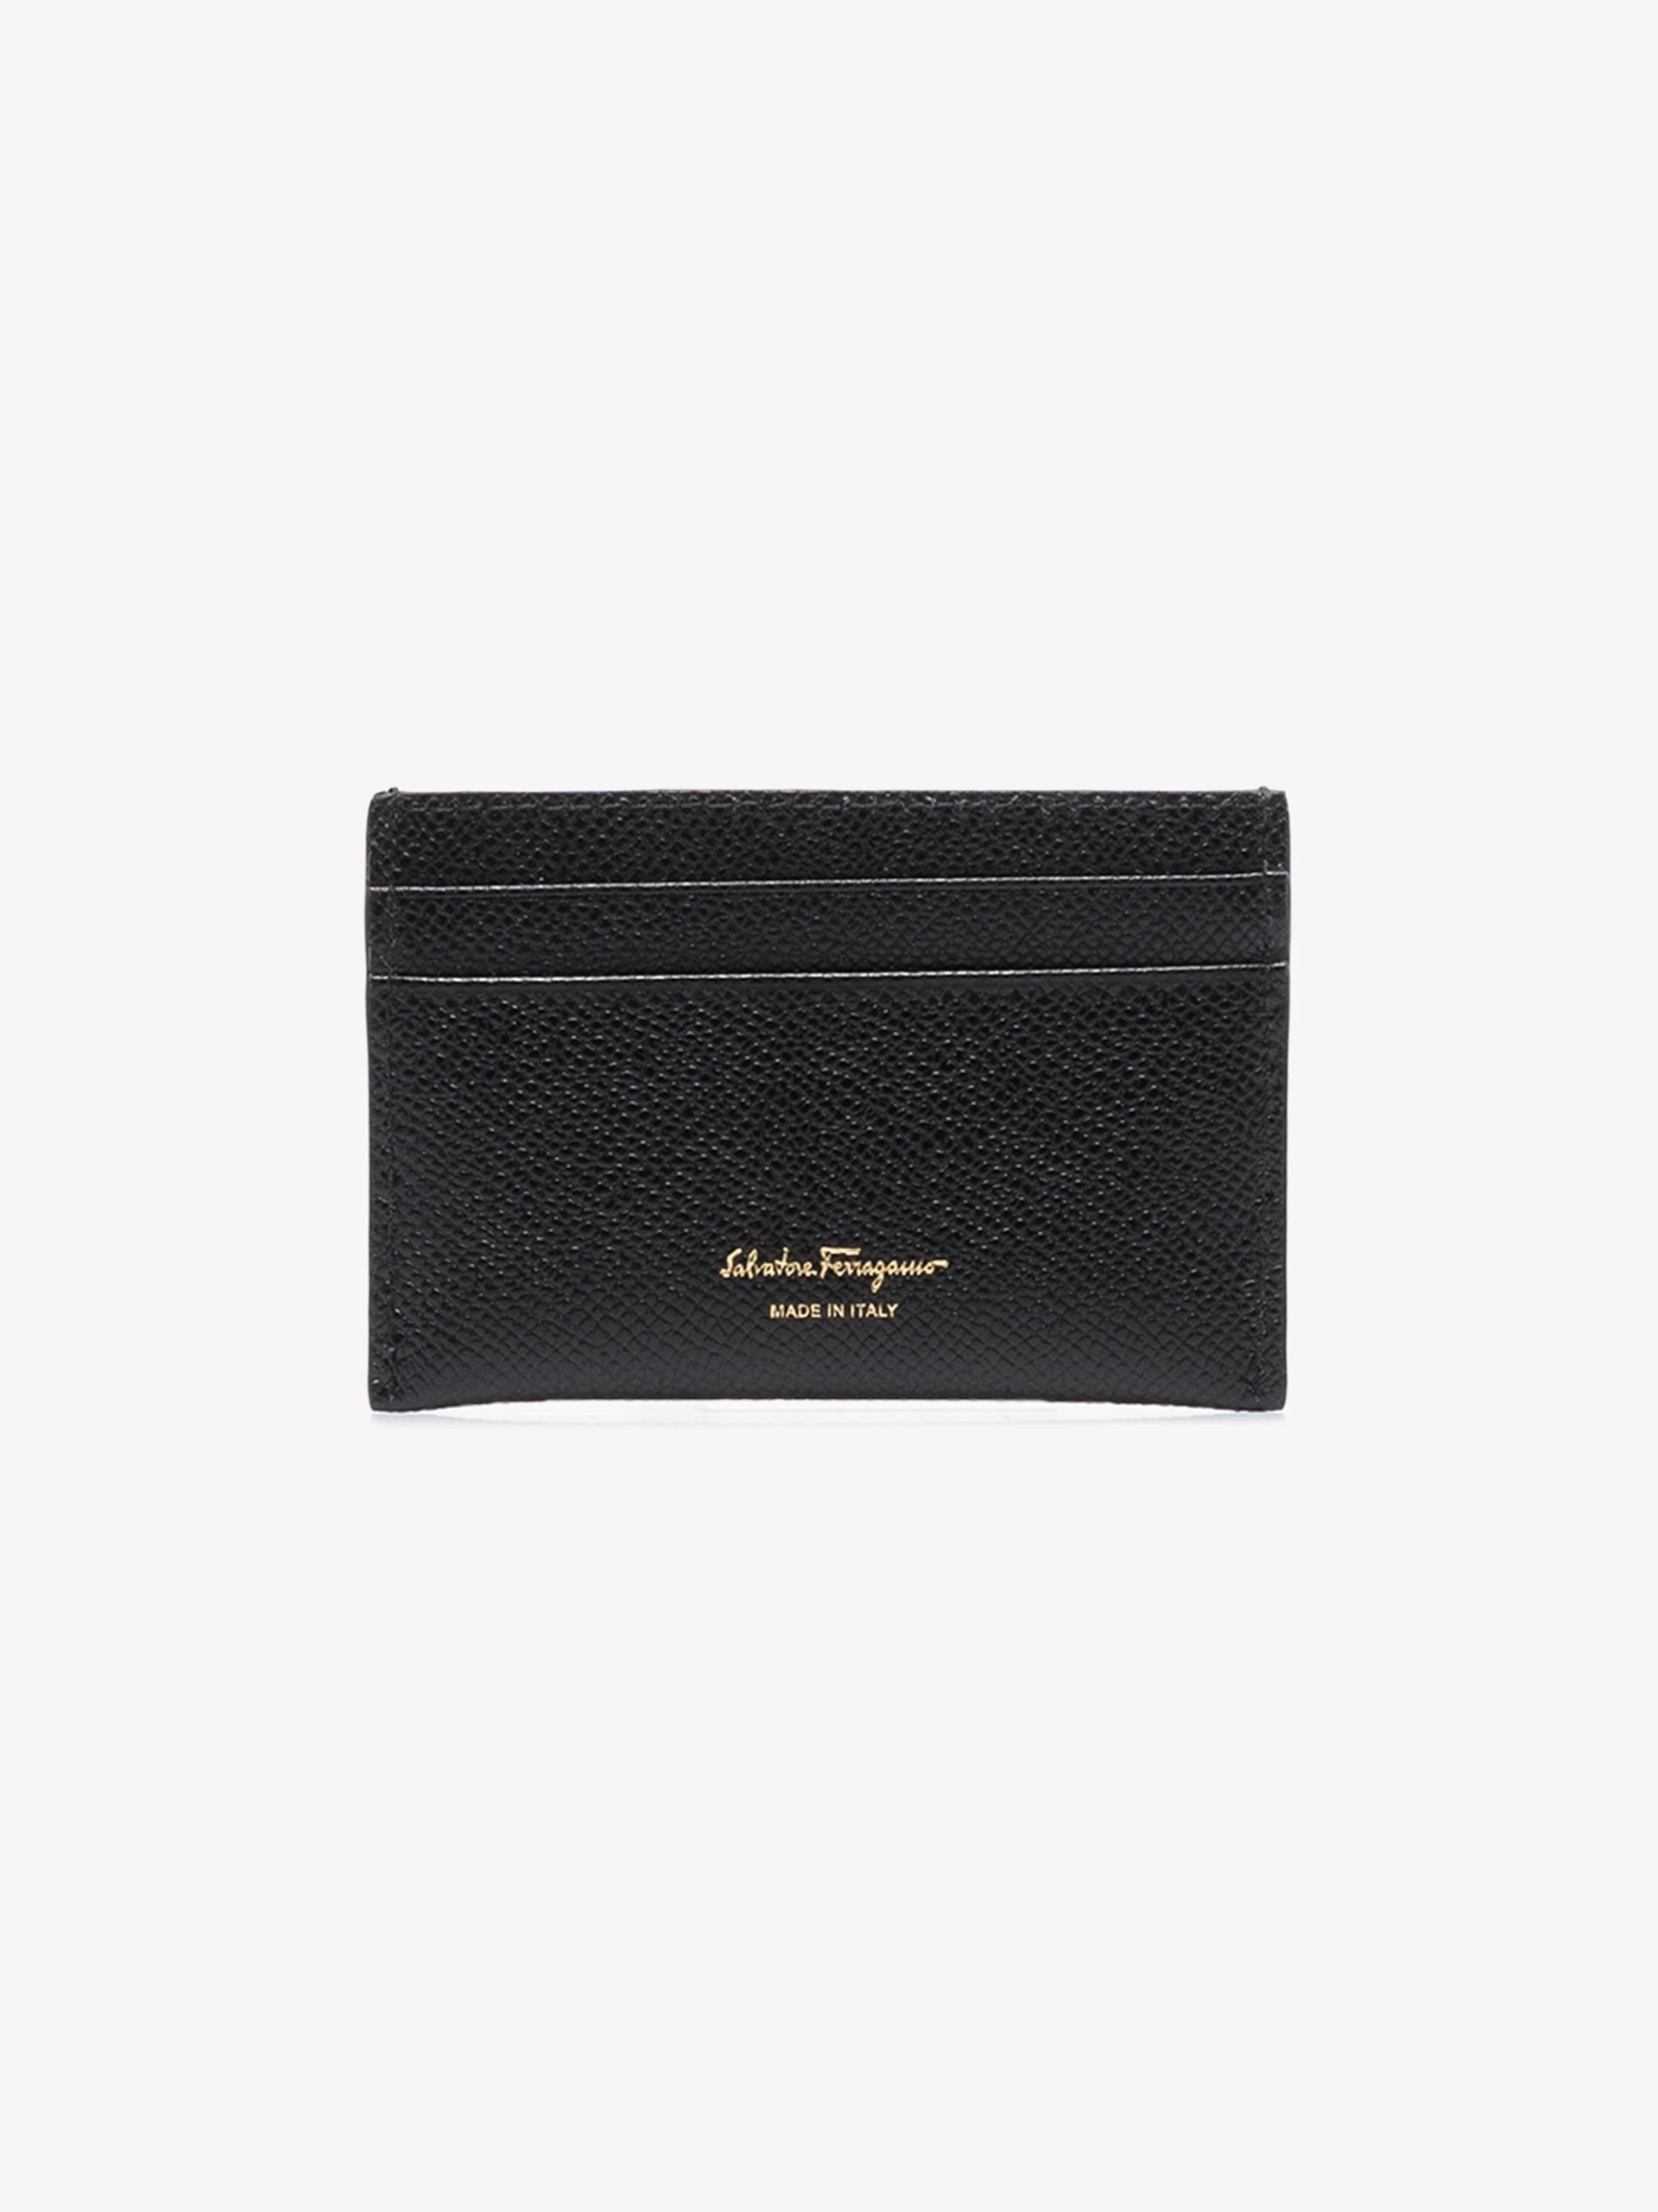 Black Gancini leather card holder - 2